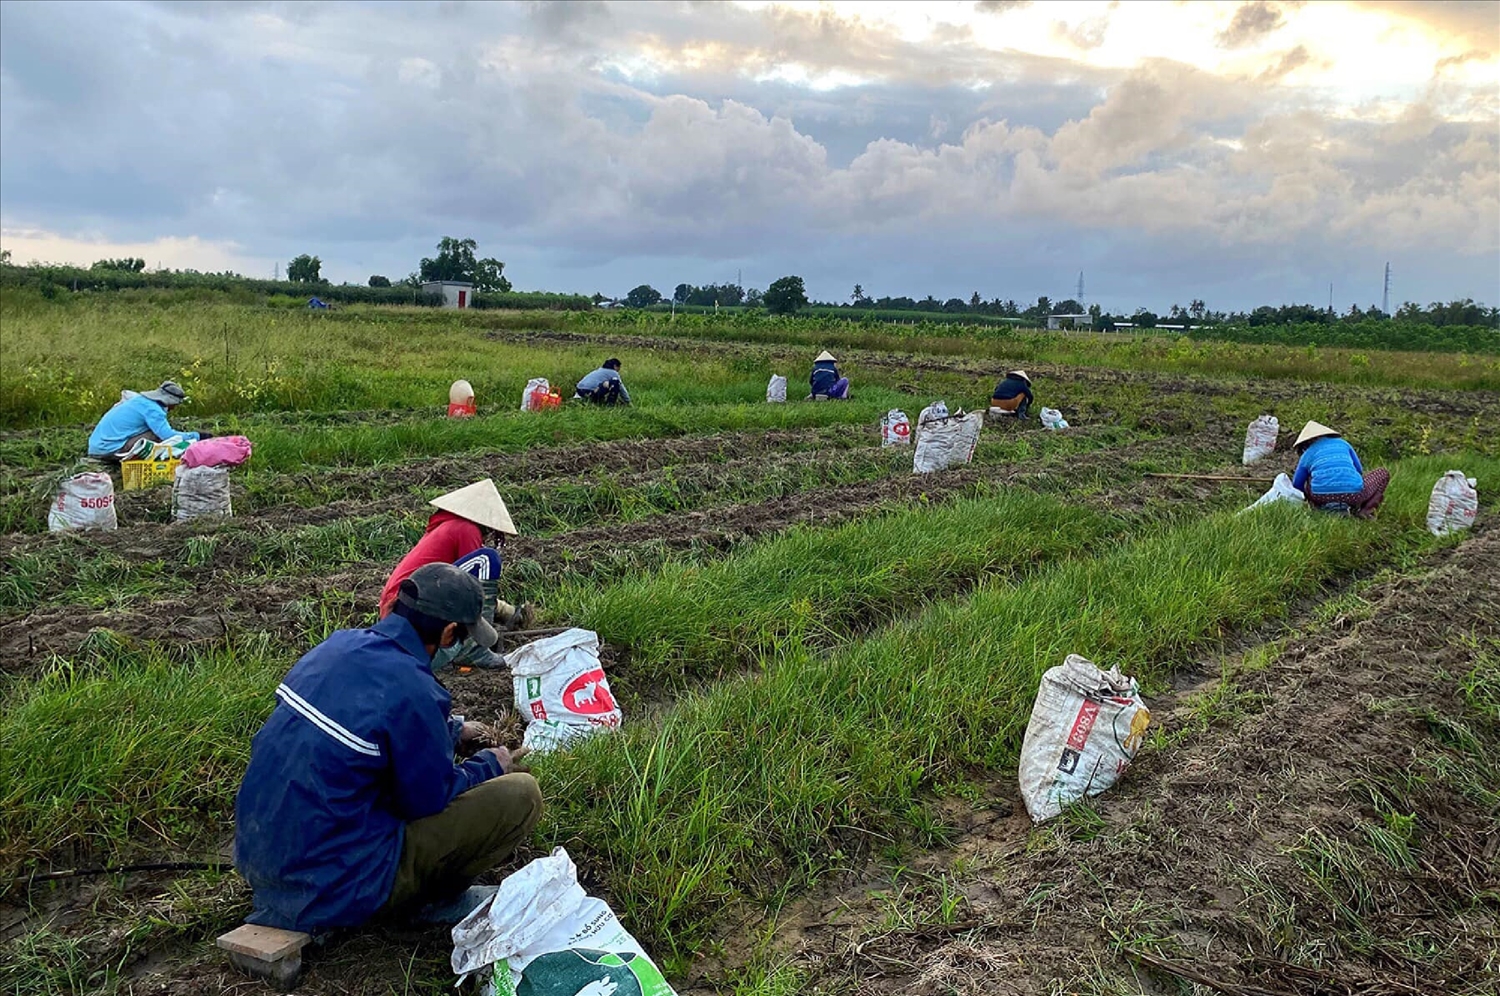 Nông dân trồng kiệu ở xã Bình Phục, huyện Thăng Bình, Quảng Nam đang khẩn trương thu hoạch kiệu để bán dịp Tết